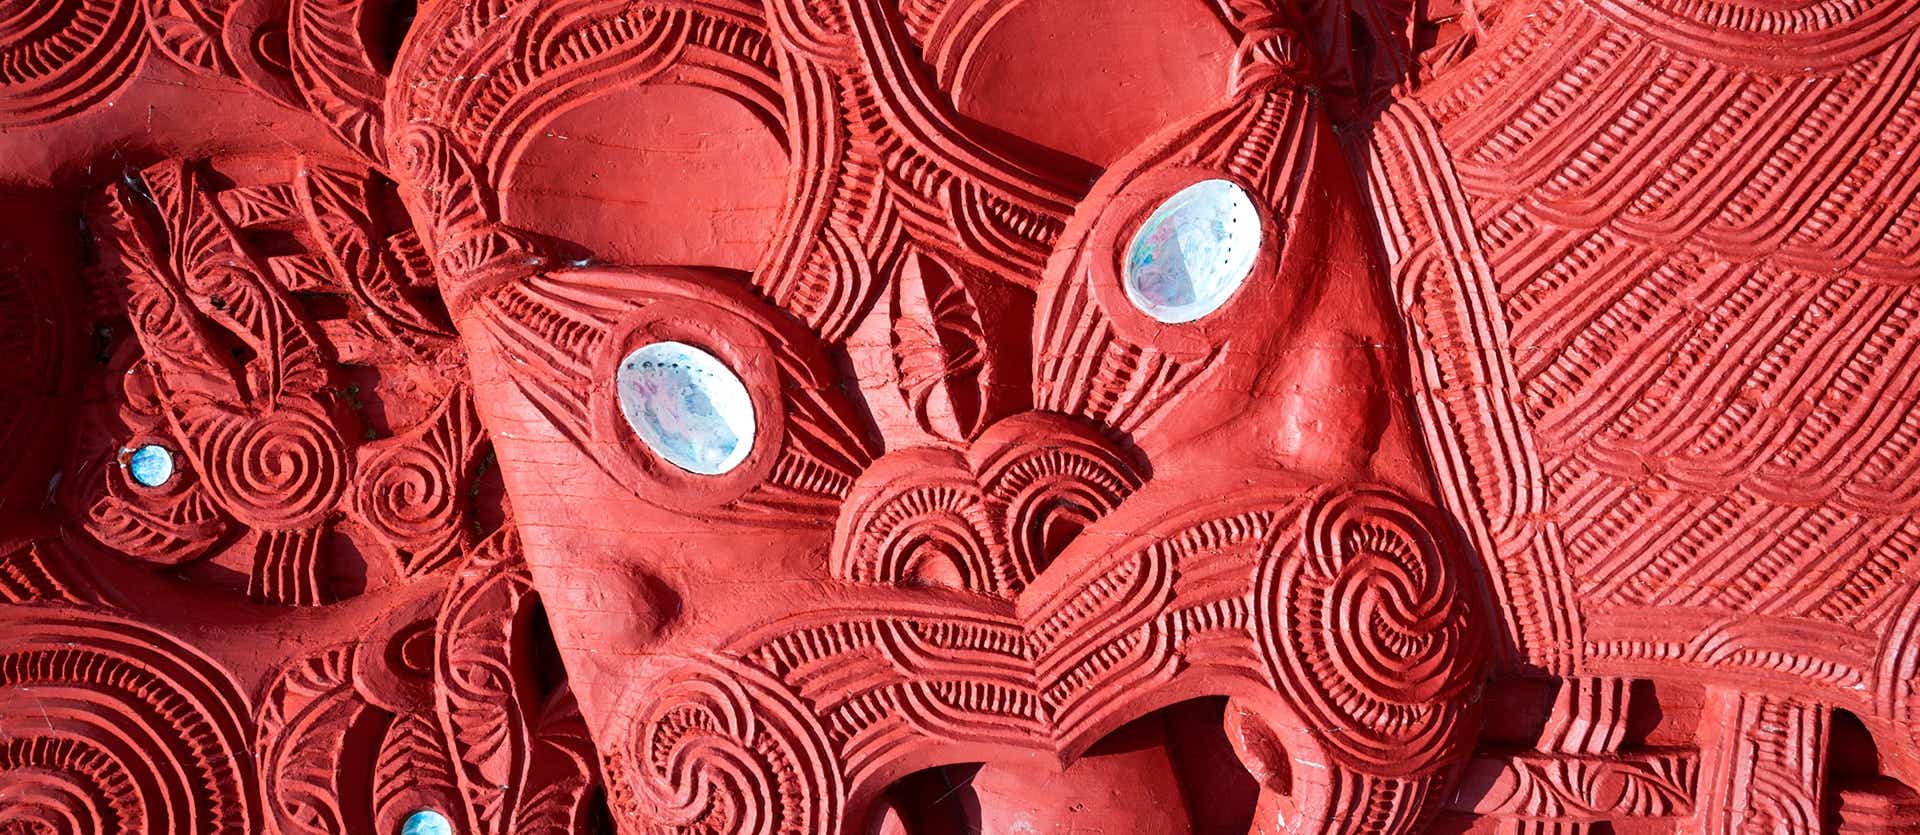 Máscara Maorí <span class="iconos separador"></span> Rotorúa